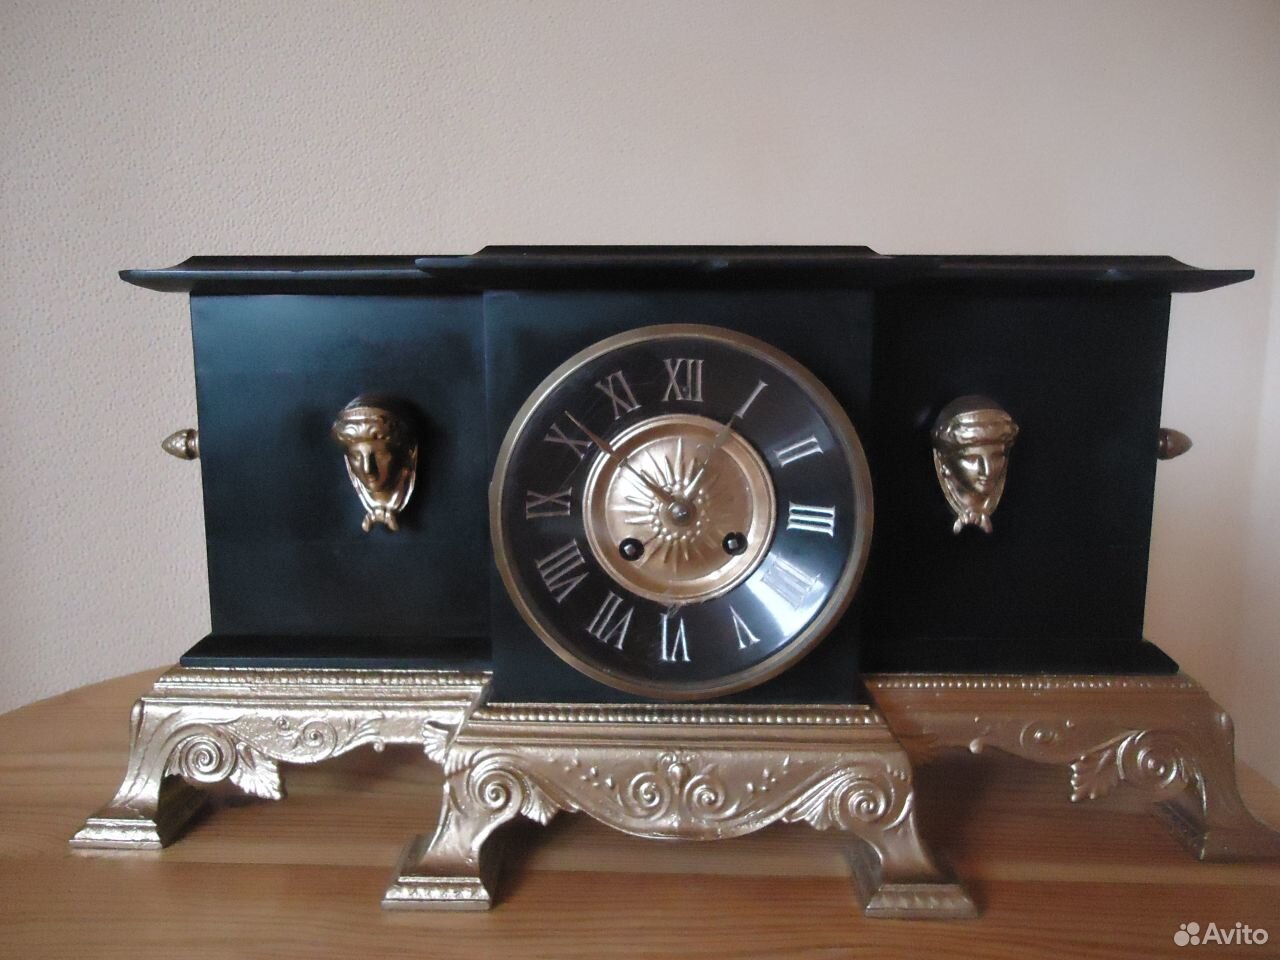 Авито часы ижевск. Japy freres часы каминные. Japy freres Cie часы каминные с боем. Часы каминные 19 век мрамор. Часы каминные 16 -19 век.